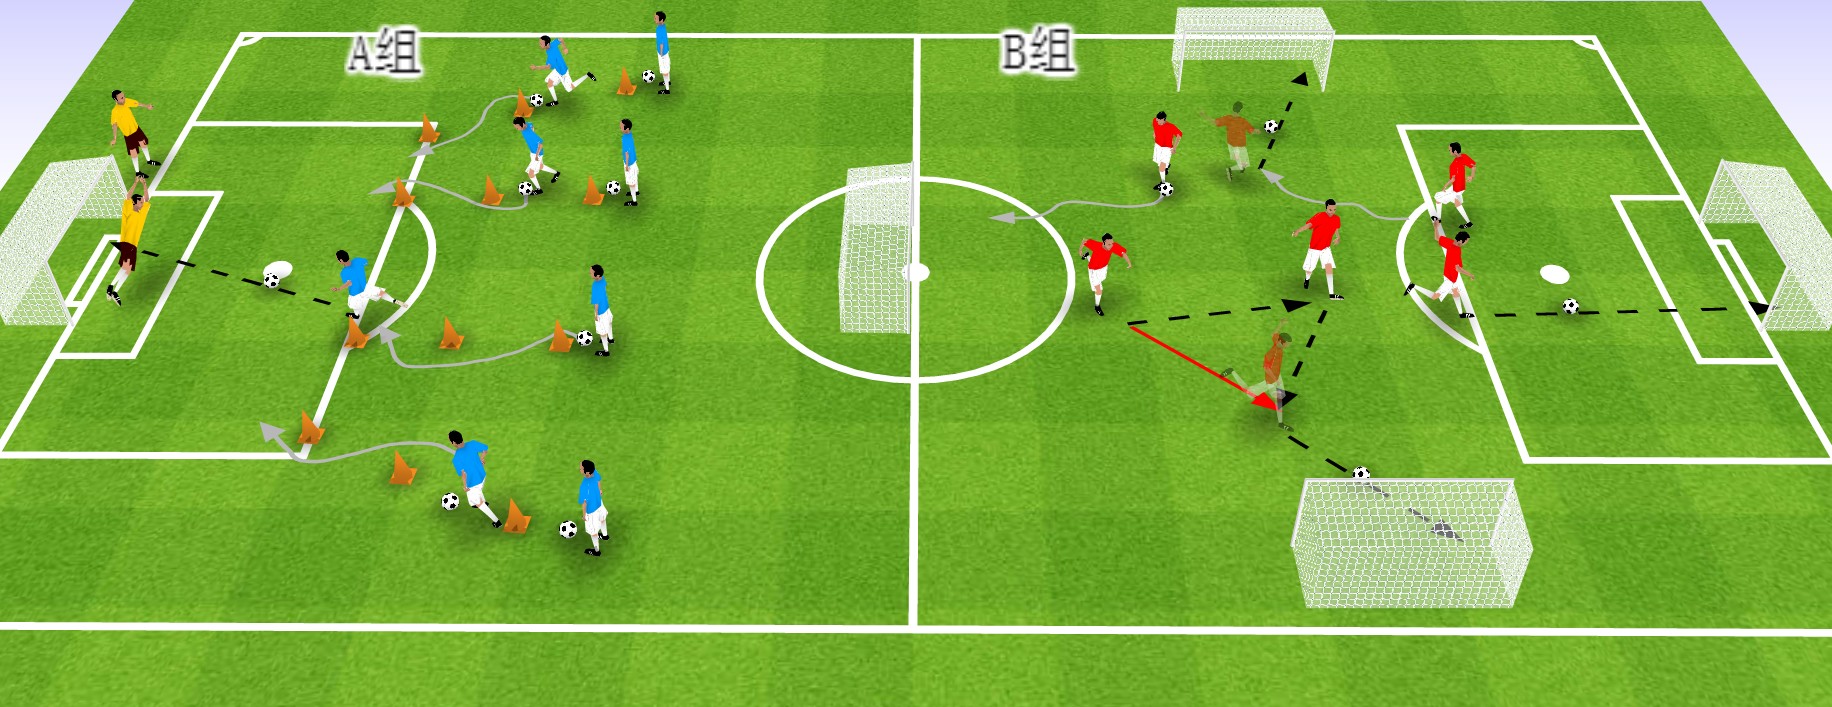 足球教案:迅速提升球员射门能力的四种训练方